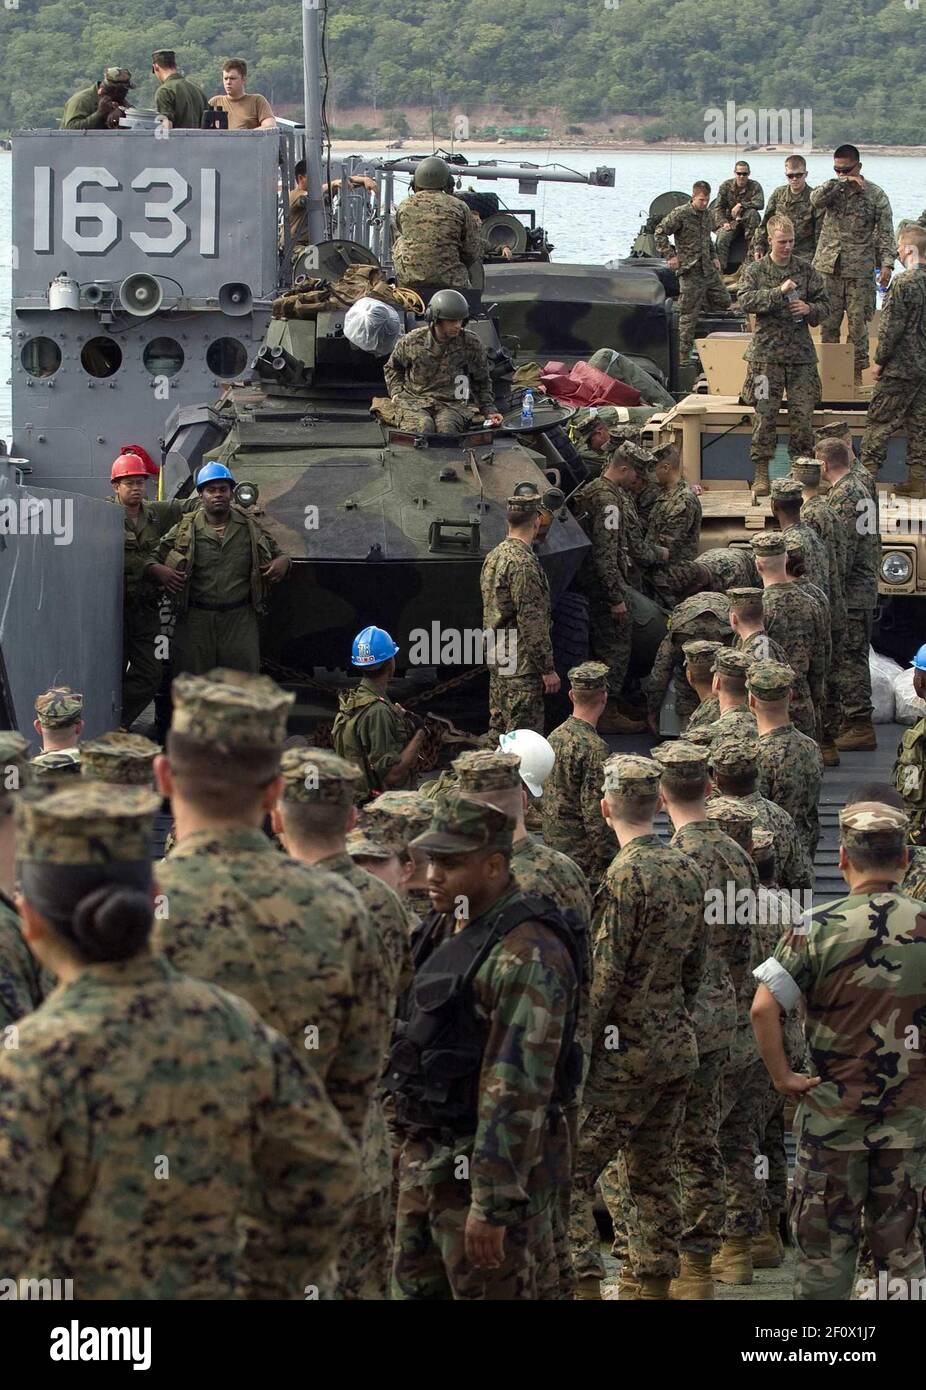 8 de mayo de 2008 - Golfo de Tailandia - EE.UU. Marines asignados a la Unidad Expedicionaria Marina 31st (MEU) y marineros asignados a la Unidad de Artesanía de Asalto (ACU) 1 y la Unidad de Beachmaster (BMU 1) Prepárese para descargar Landing Craft Utility (LCU) 1631 después de transportar vehículos y equipo desde el buque de asalto anfibio USS Essex (LHD 2). Essex está participando en Cobra Gold 2008, un ejercicio militar conjunto patrocinado por los Estados Unidos y Tailandia diseñado para mejorar la interoperabilidad entre las fuerzas conjuntas de los Estados Unidos y las fuerzas combinadas de los militares tailandeses, singapurenses, japoneses e indonesios. Crédito de la foto: Foto de stock